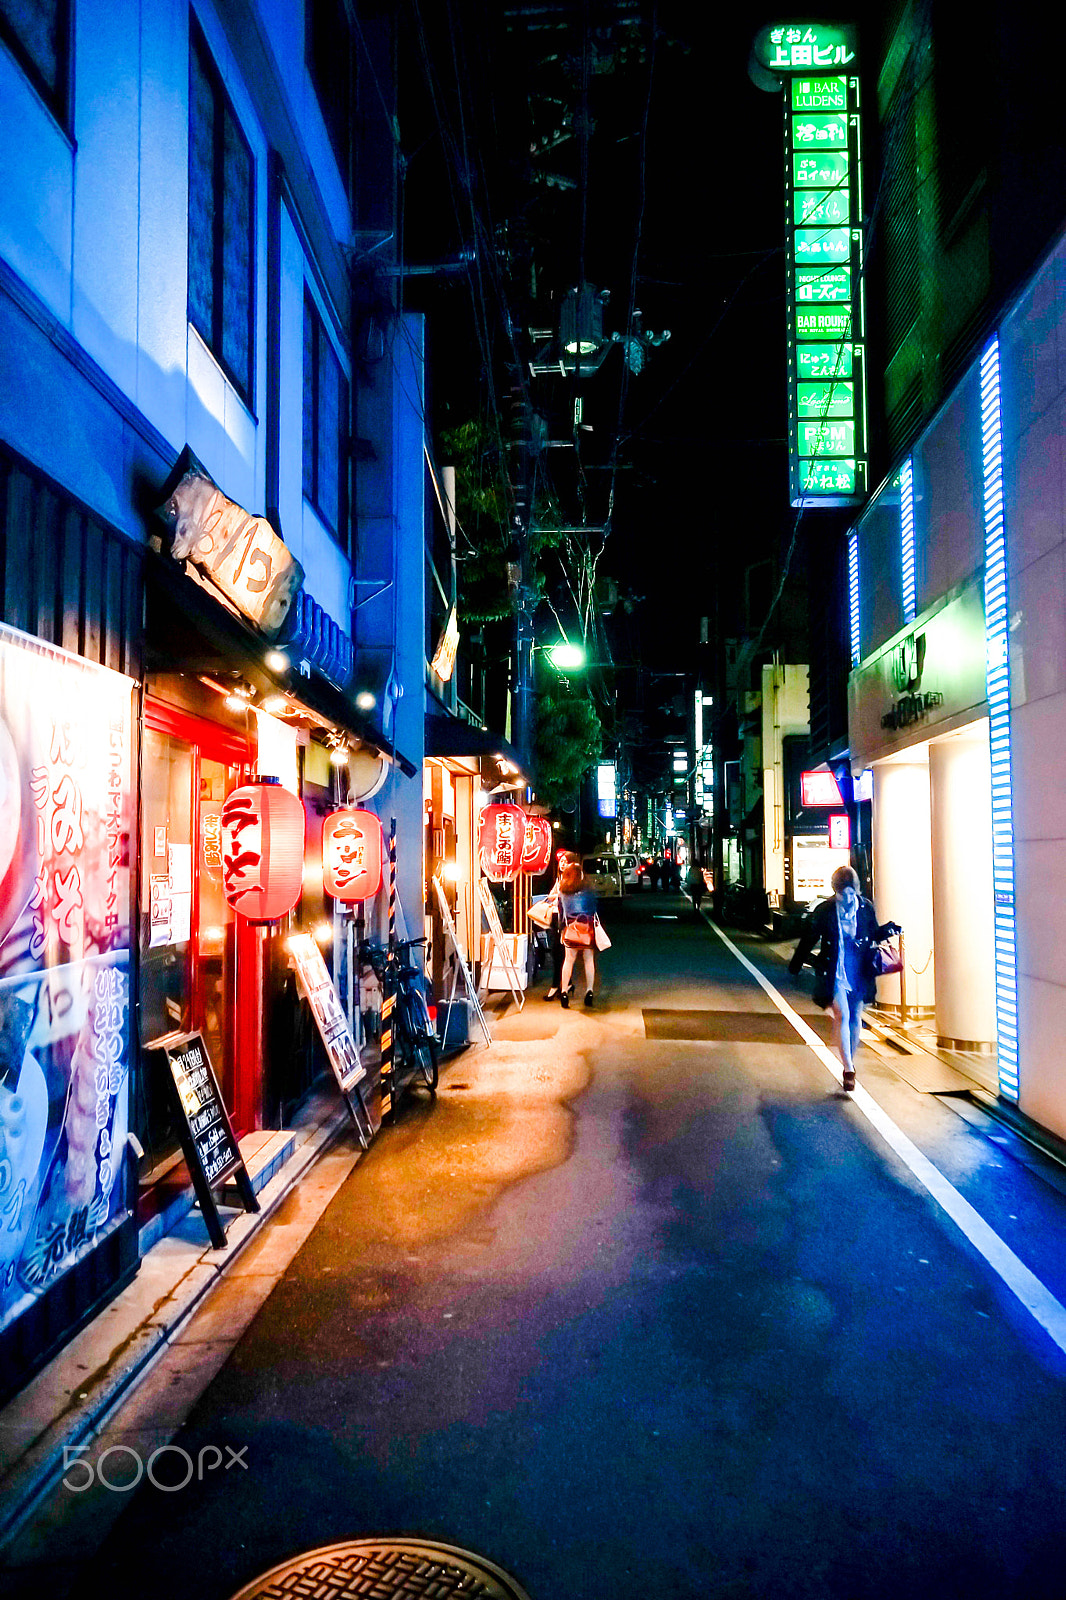 Sony Alpha NEX-7 + Sony Vario-Tessar T* E 16-70mm F4 ZA OSS sample photo. Kyoto street by night photography